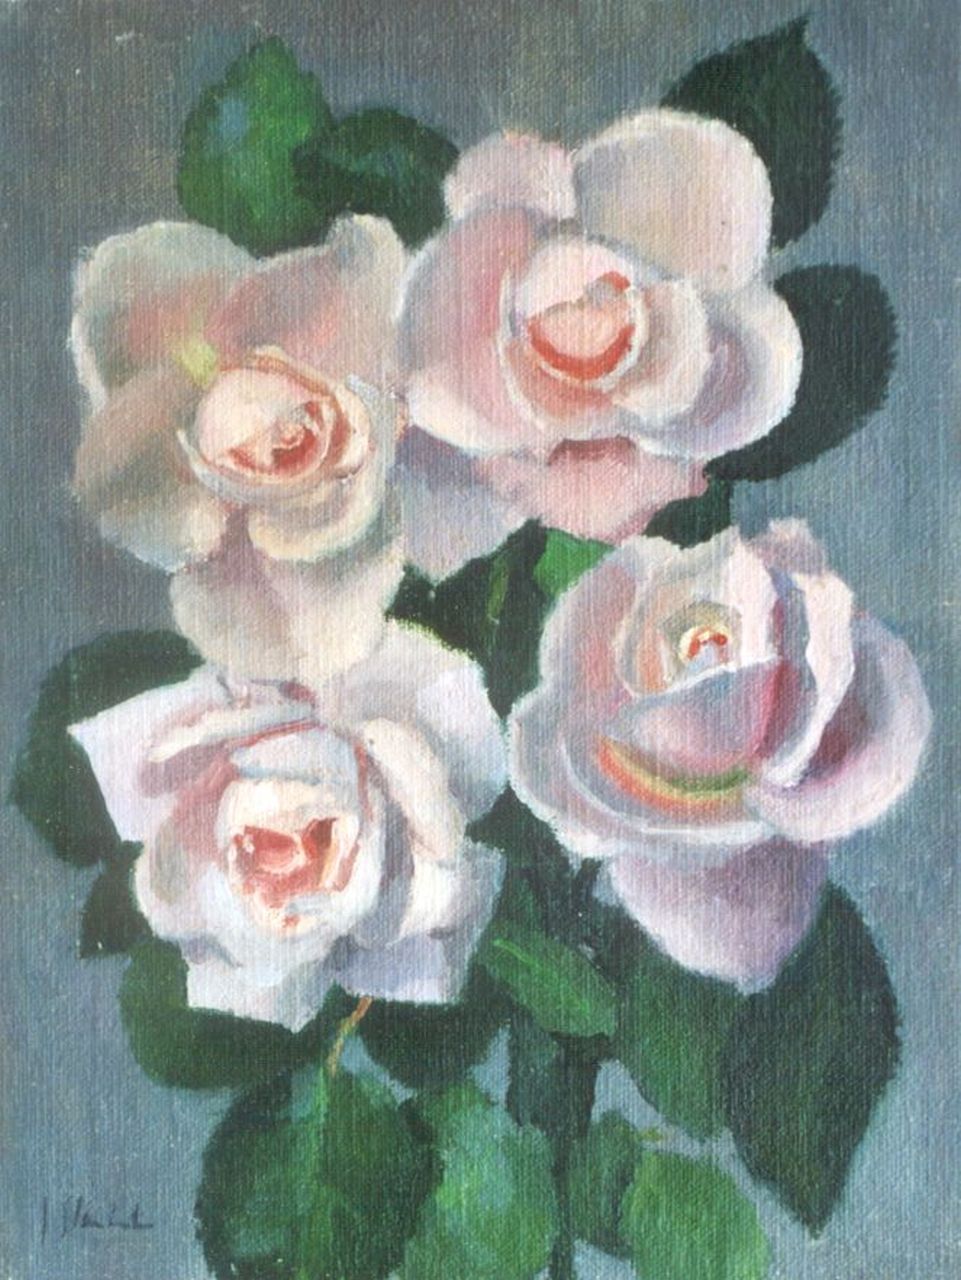 Stierhout J.A.U.  | Josephus Antonius Ubaldus 'Joop' Stierhout, Rose rozen, olieverf op doek op paneel 24,0 x 18,0 cm, gesigneerd linksonder